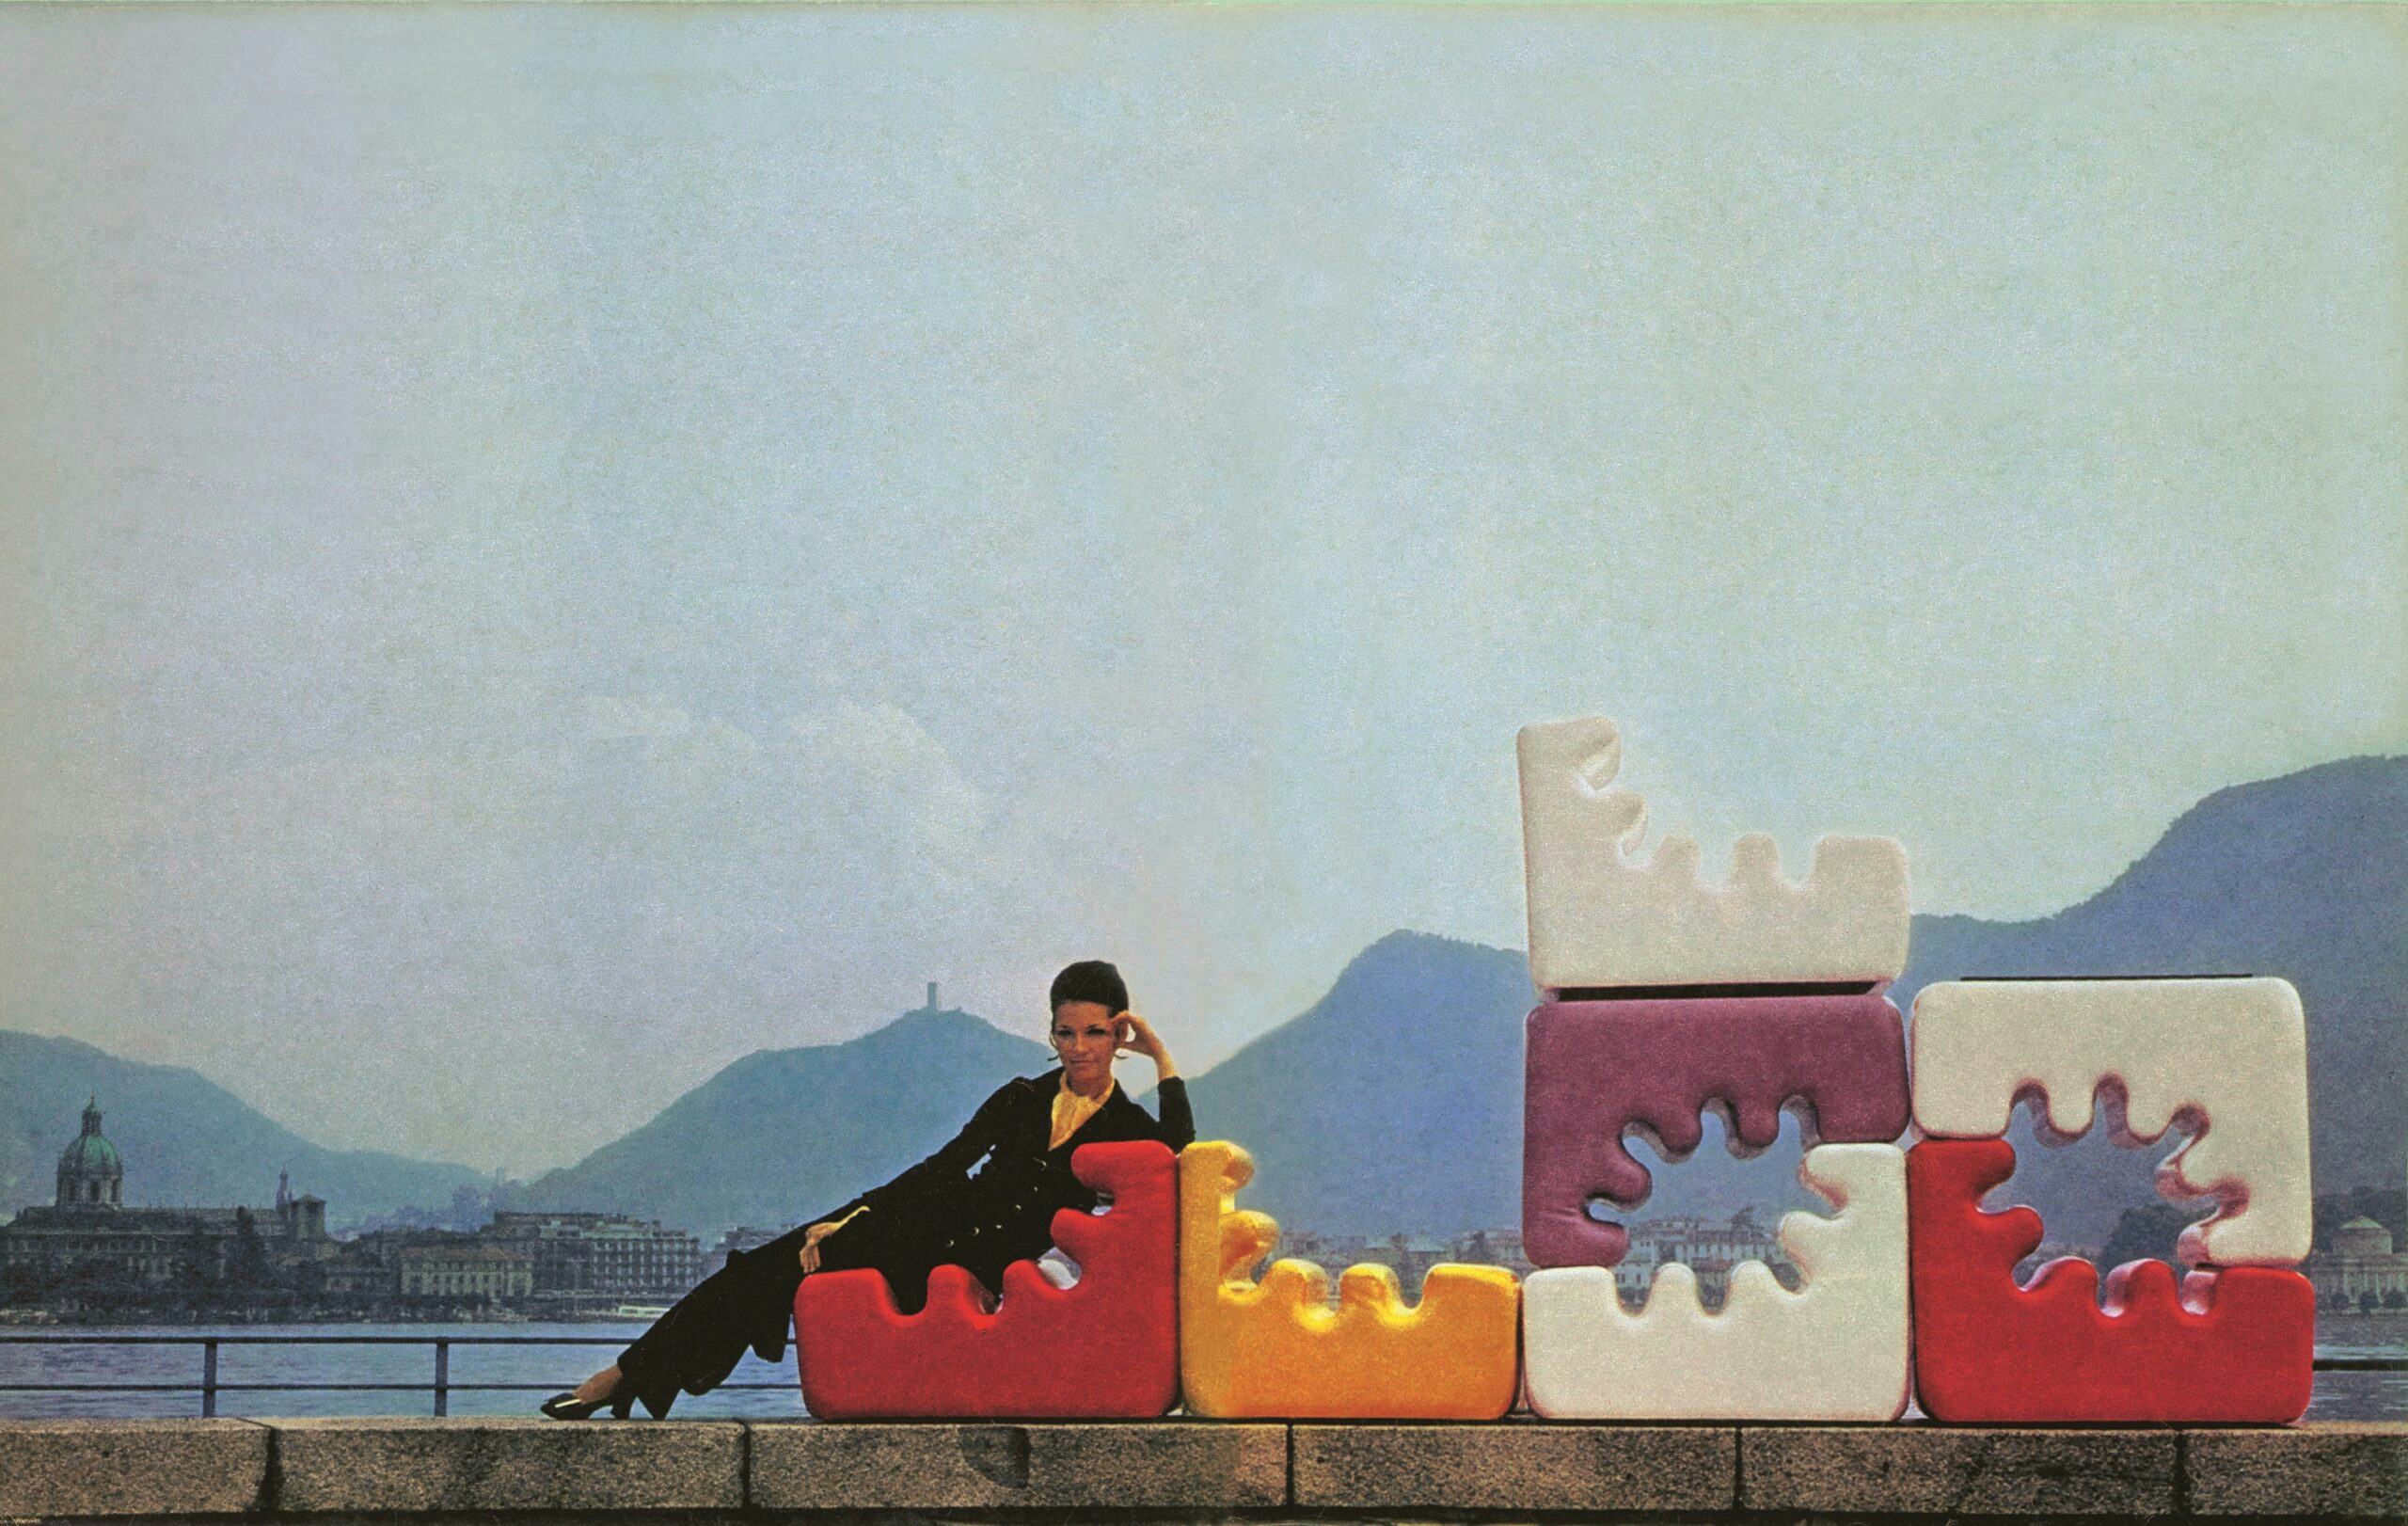 Advertentie voor Liisi Beckmann’s Karelia chair, 1966. Courtesy Zanotta SpA – Italy